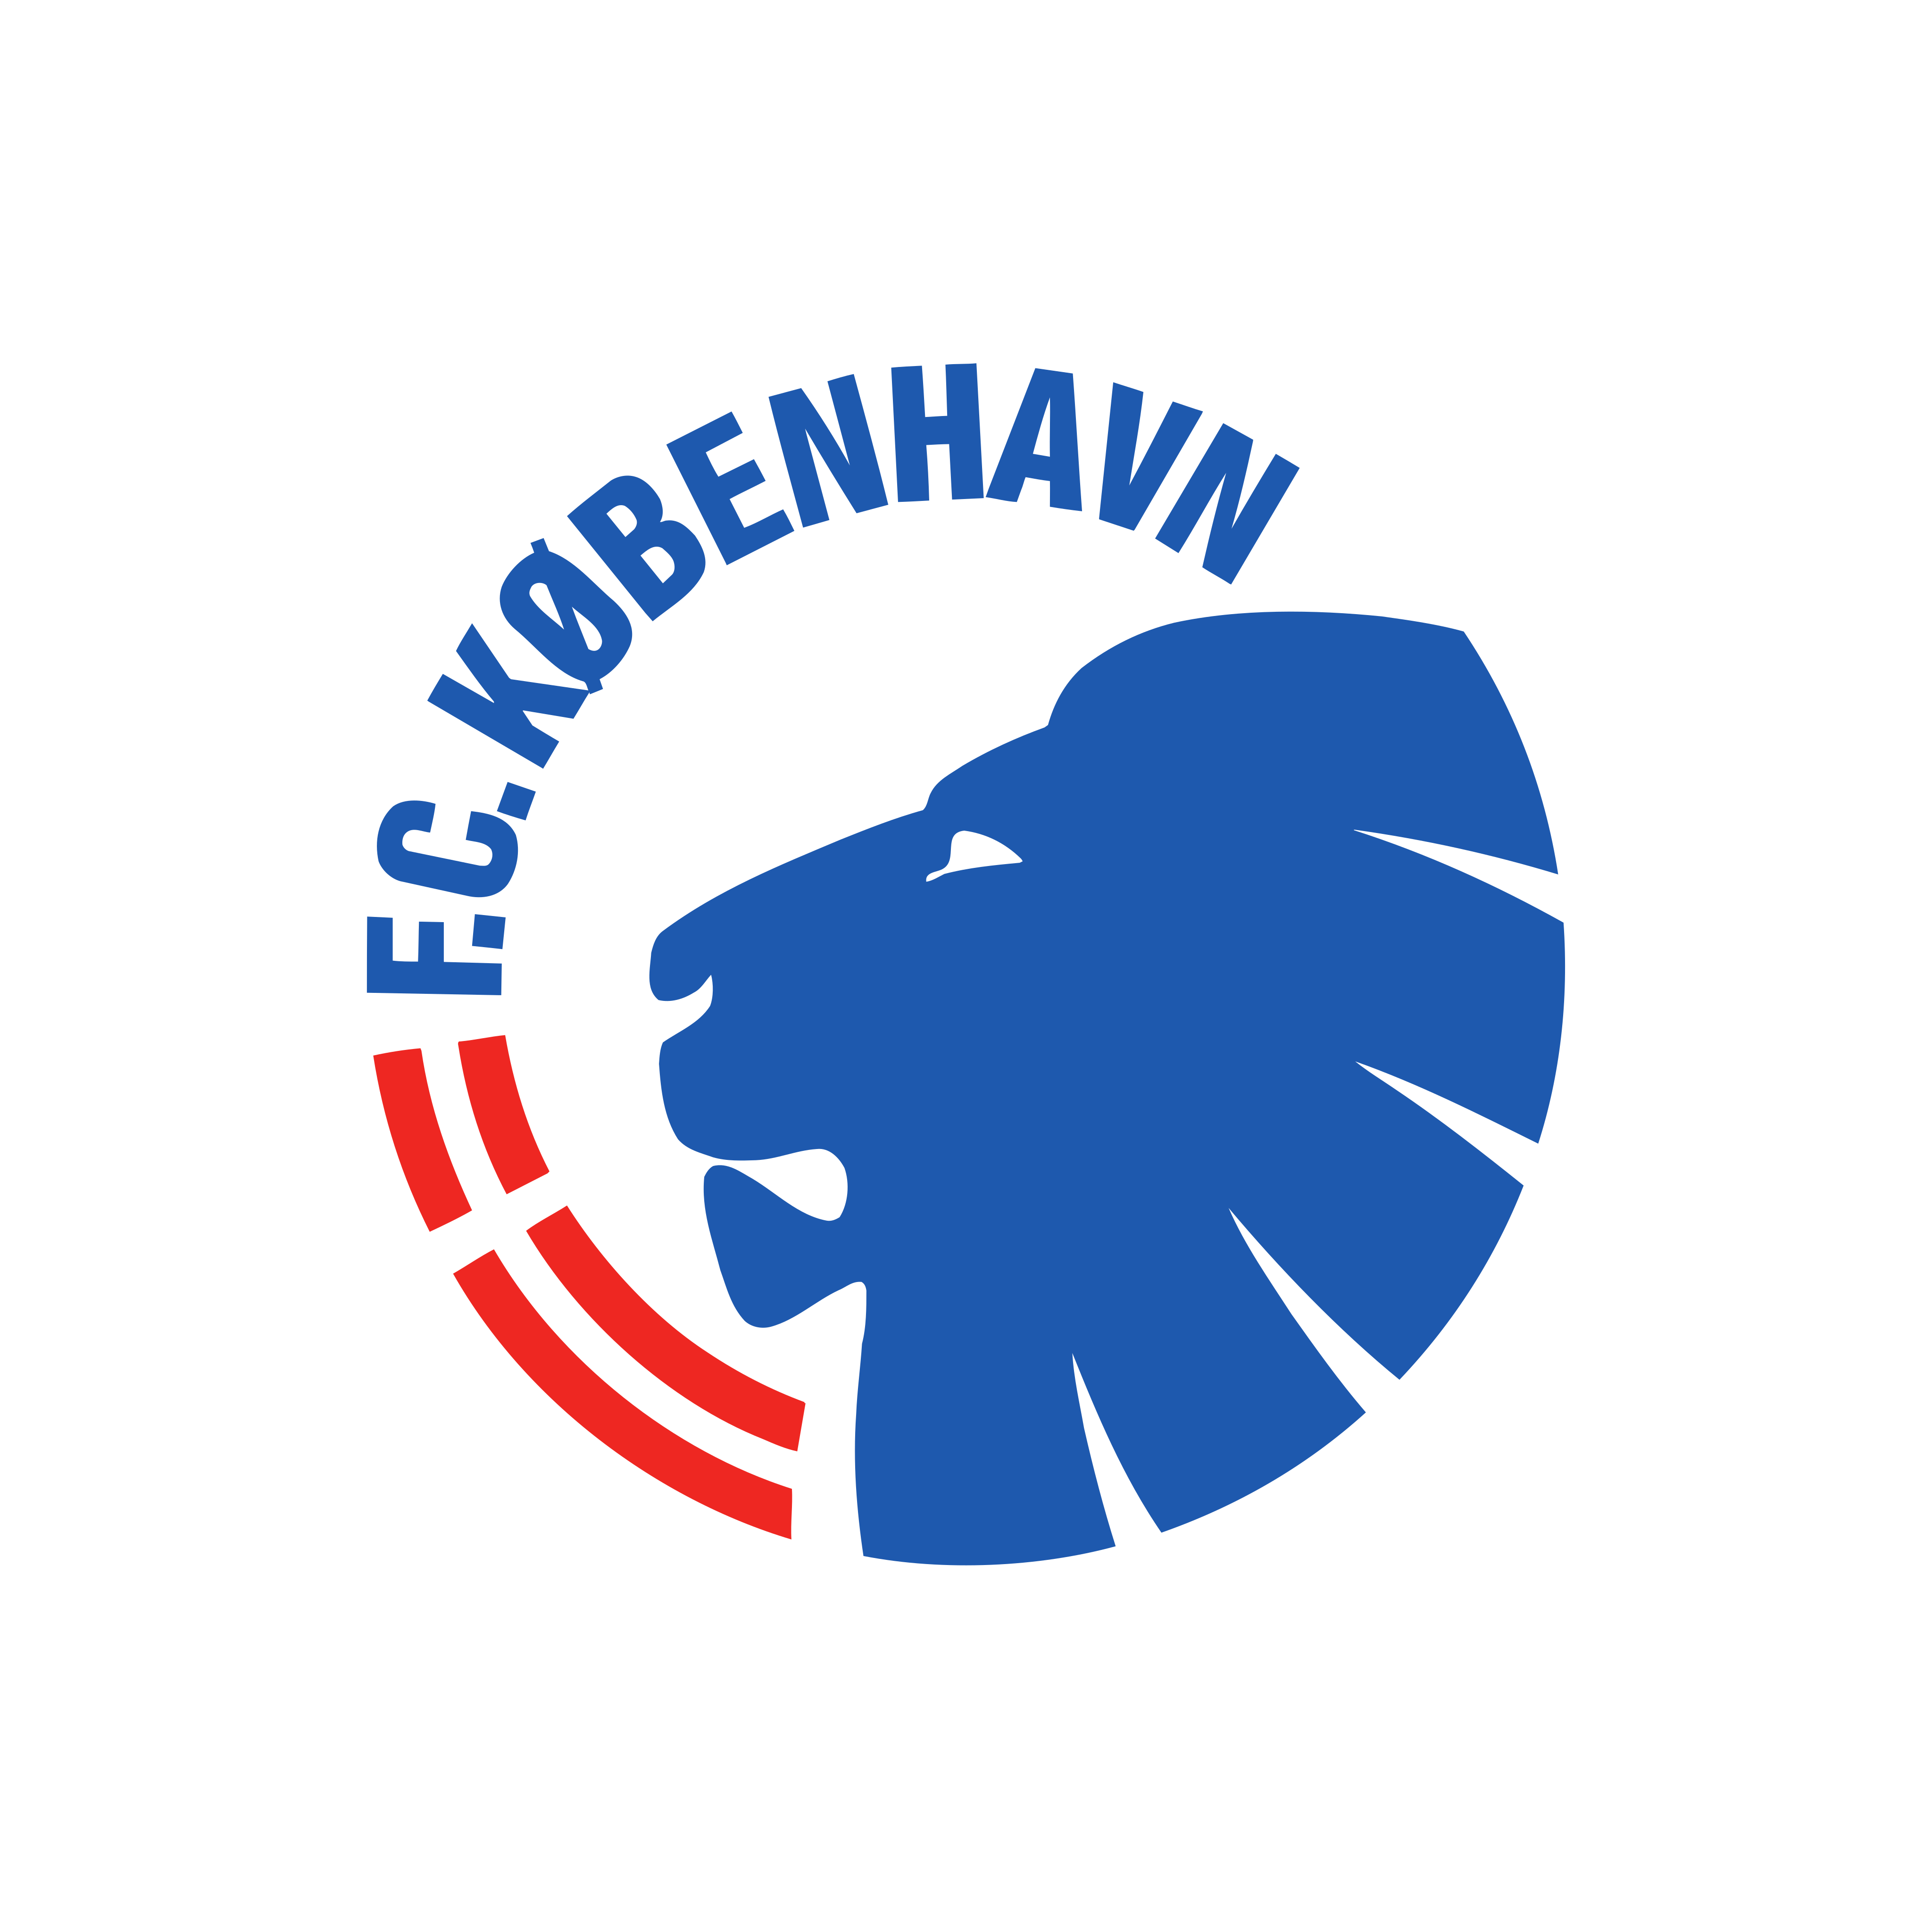 F.C. Copenhagen - F.C. København Logo PNG.